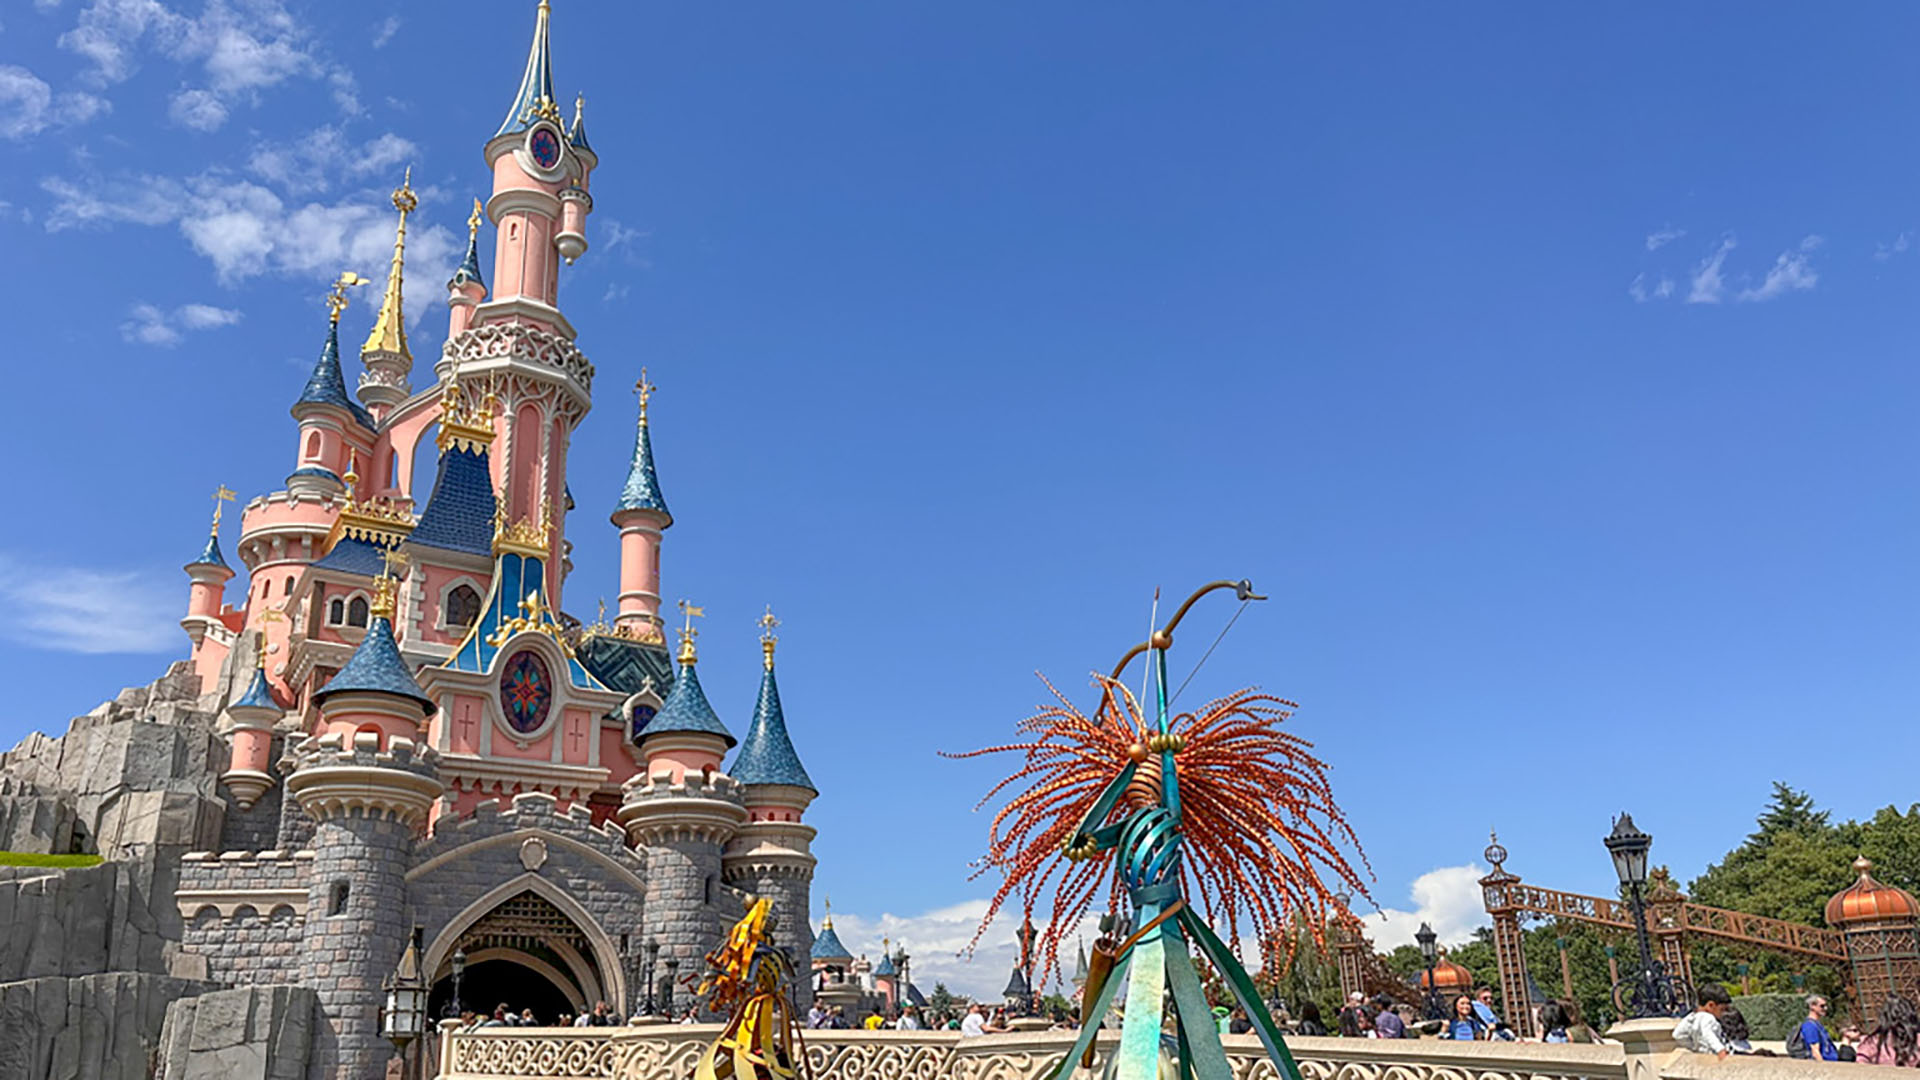 Roteiros de passeios em Paris: 5 dias com Disneyland